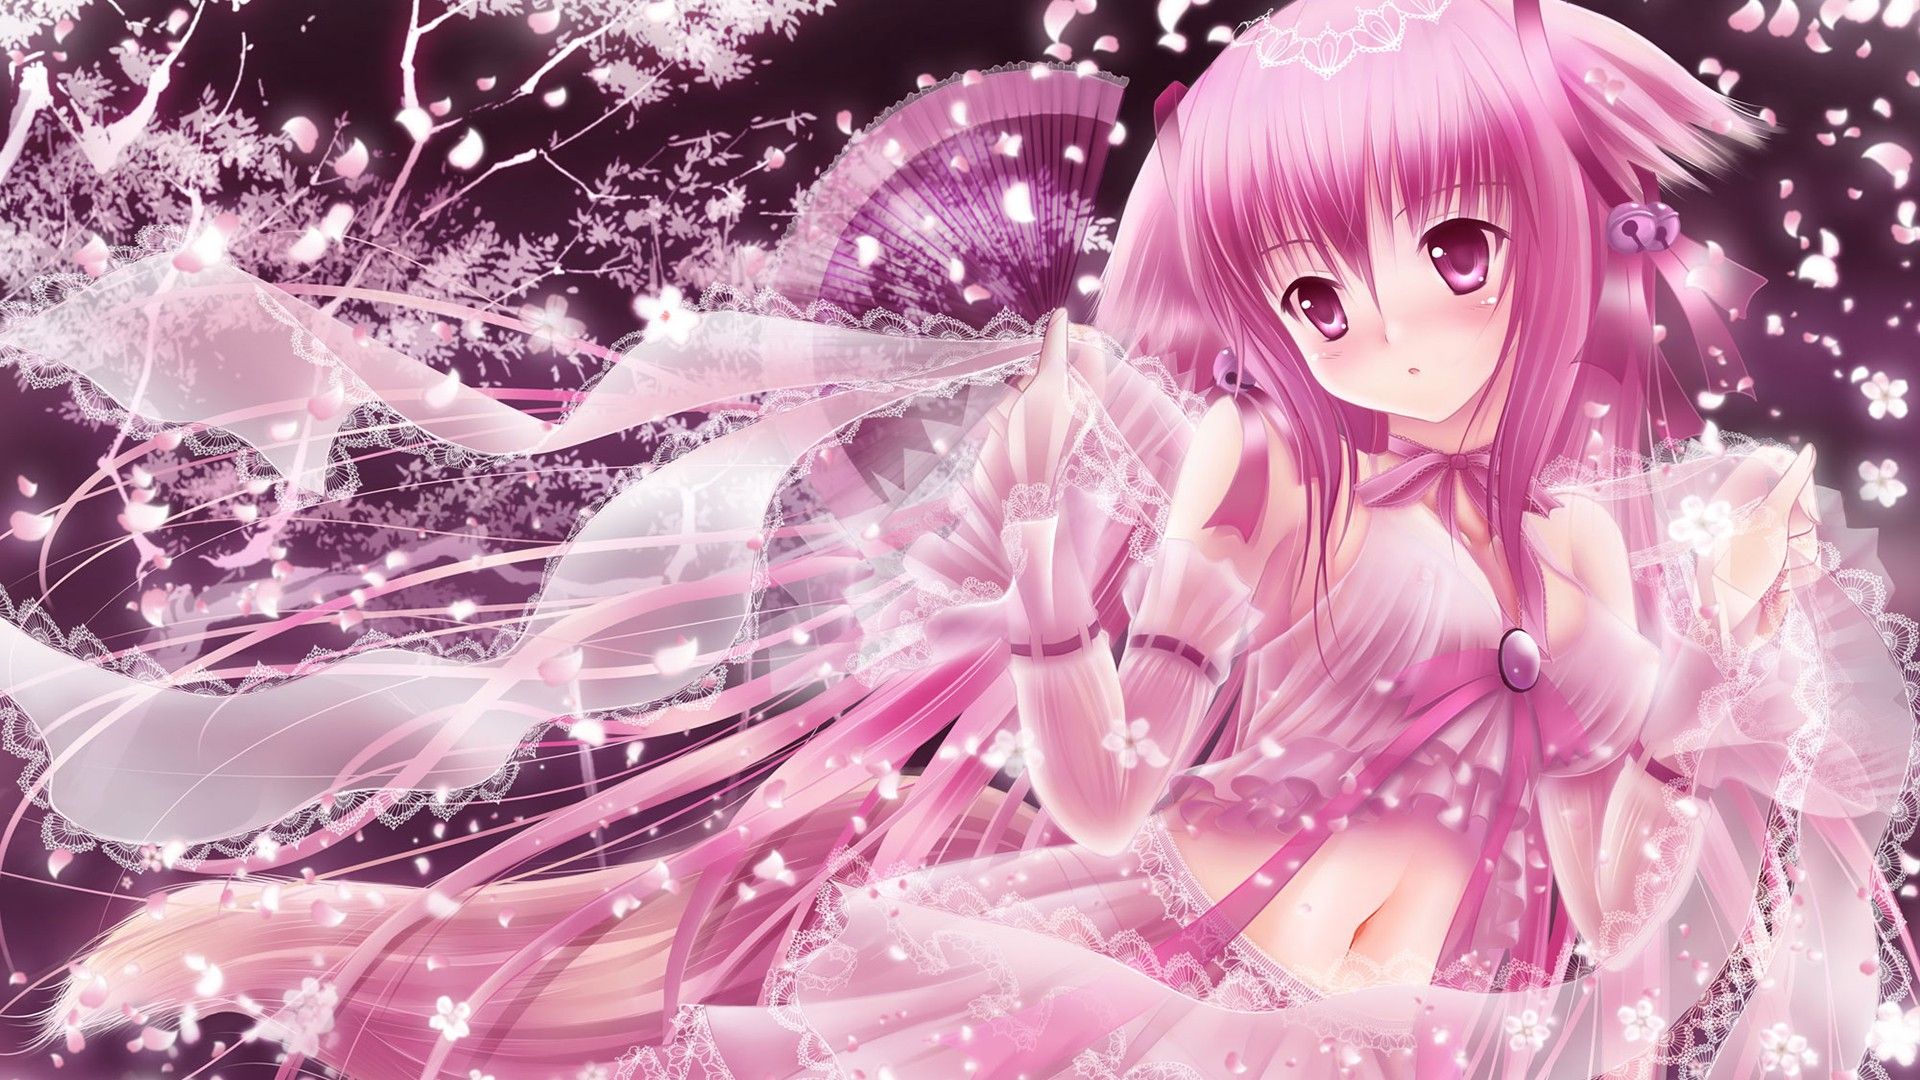 Cute Pink Rose Hair Anime Girl ilustração do Stock | Adobe Stock-demhanvico.com.vn